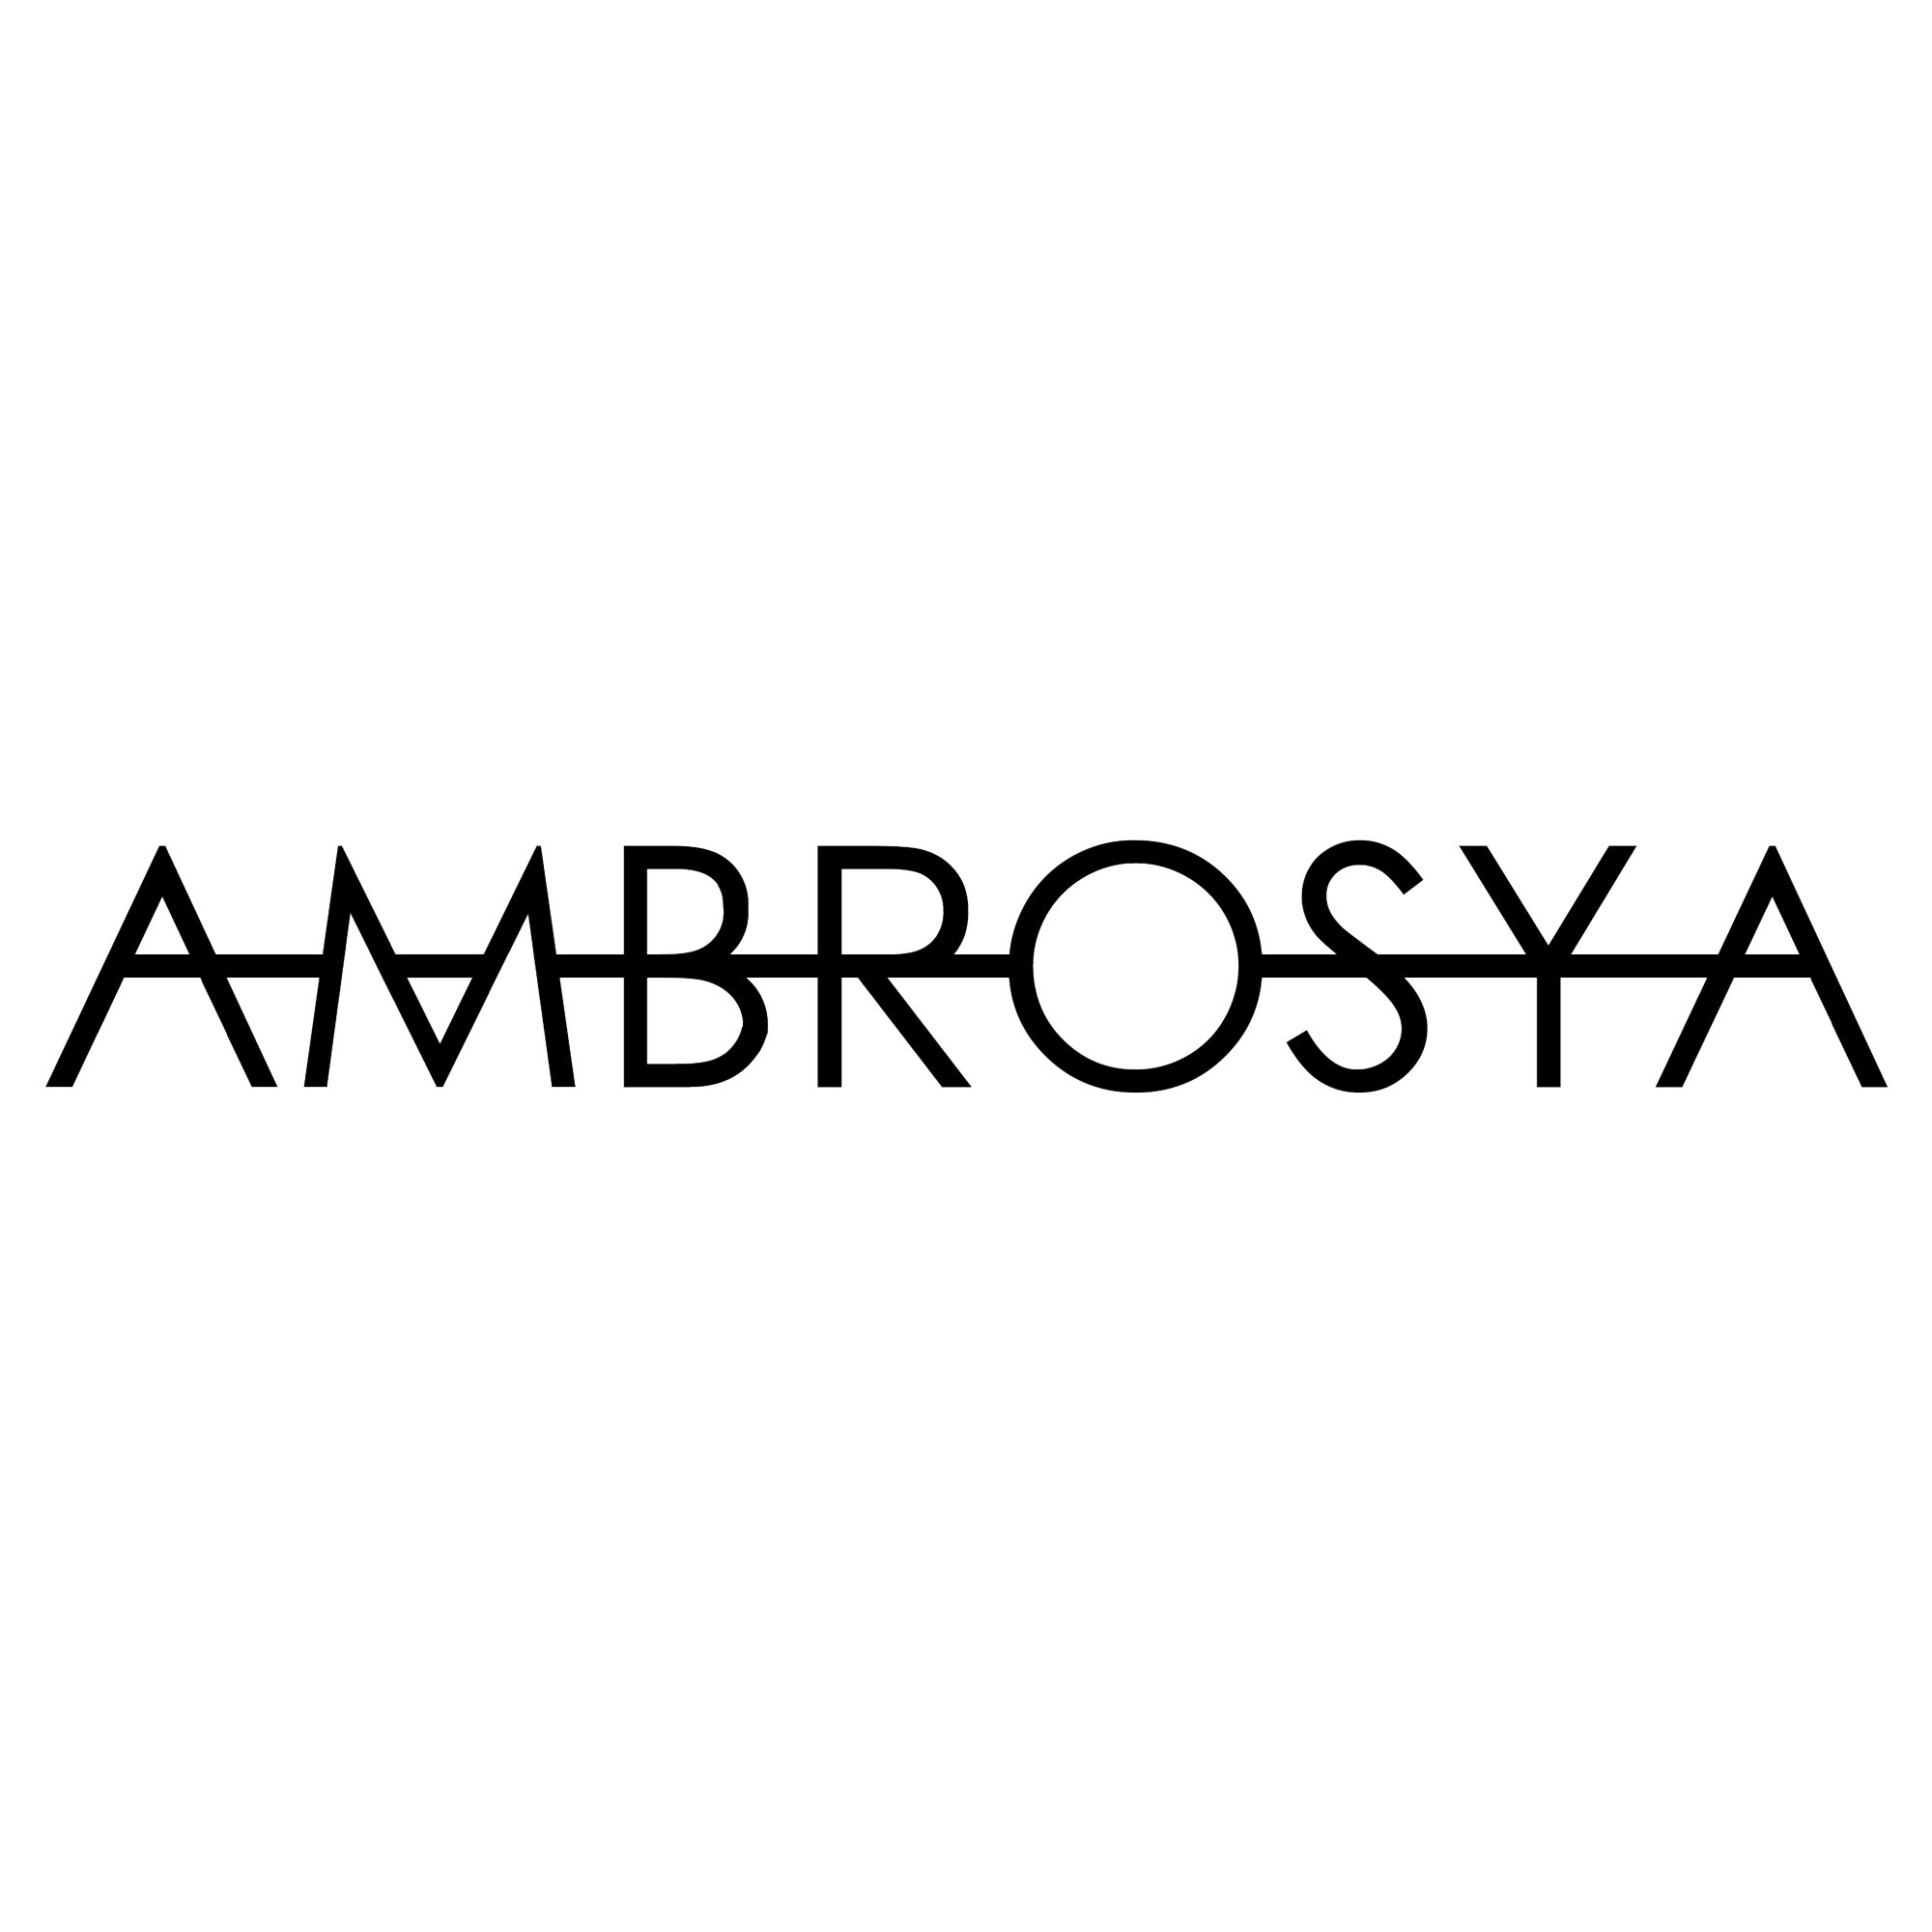 Ambrosya